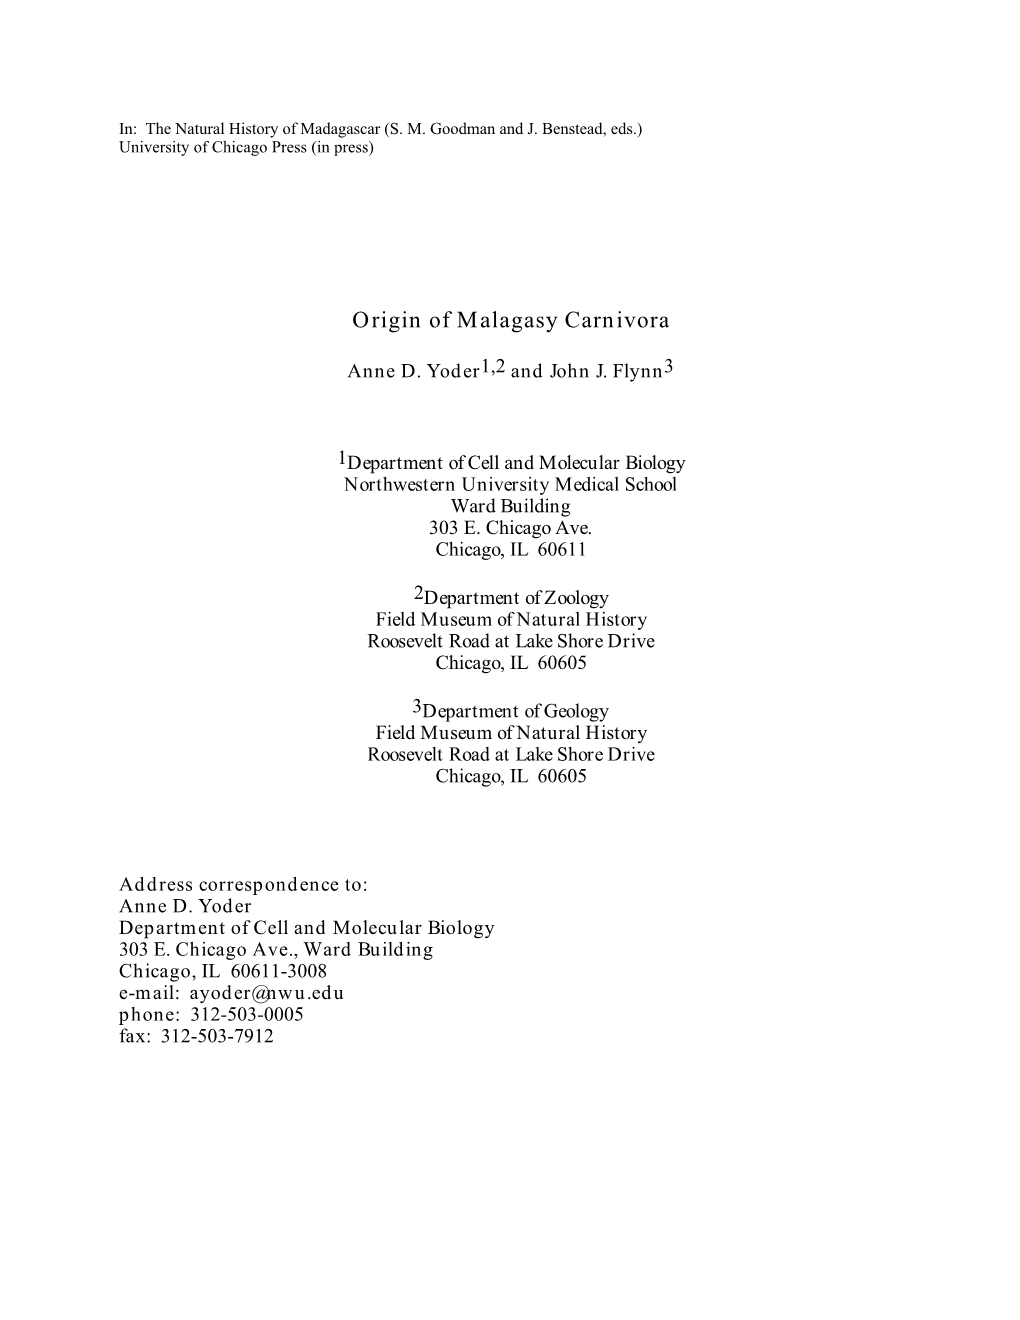 Origin of Malagasy Carnivora